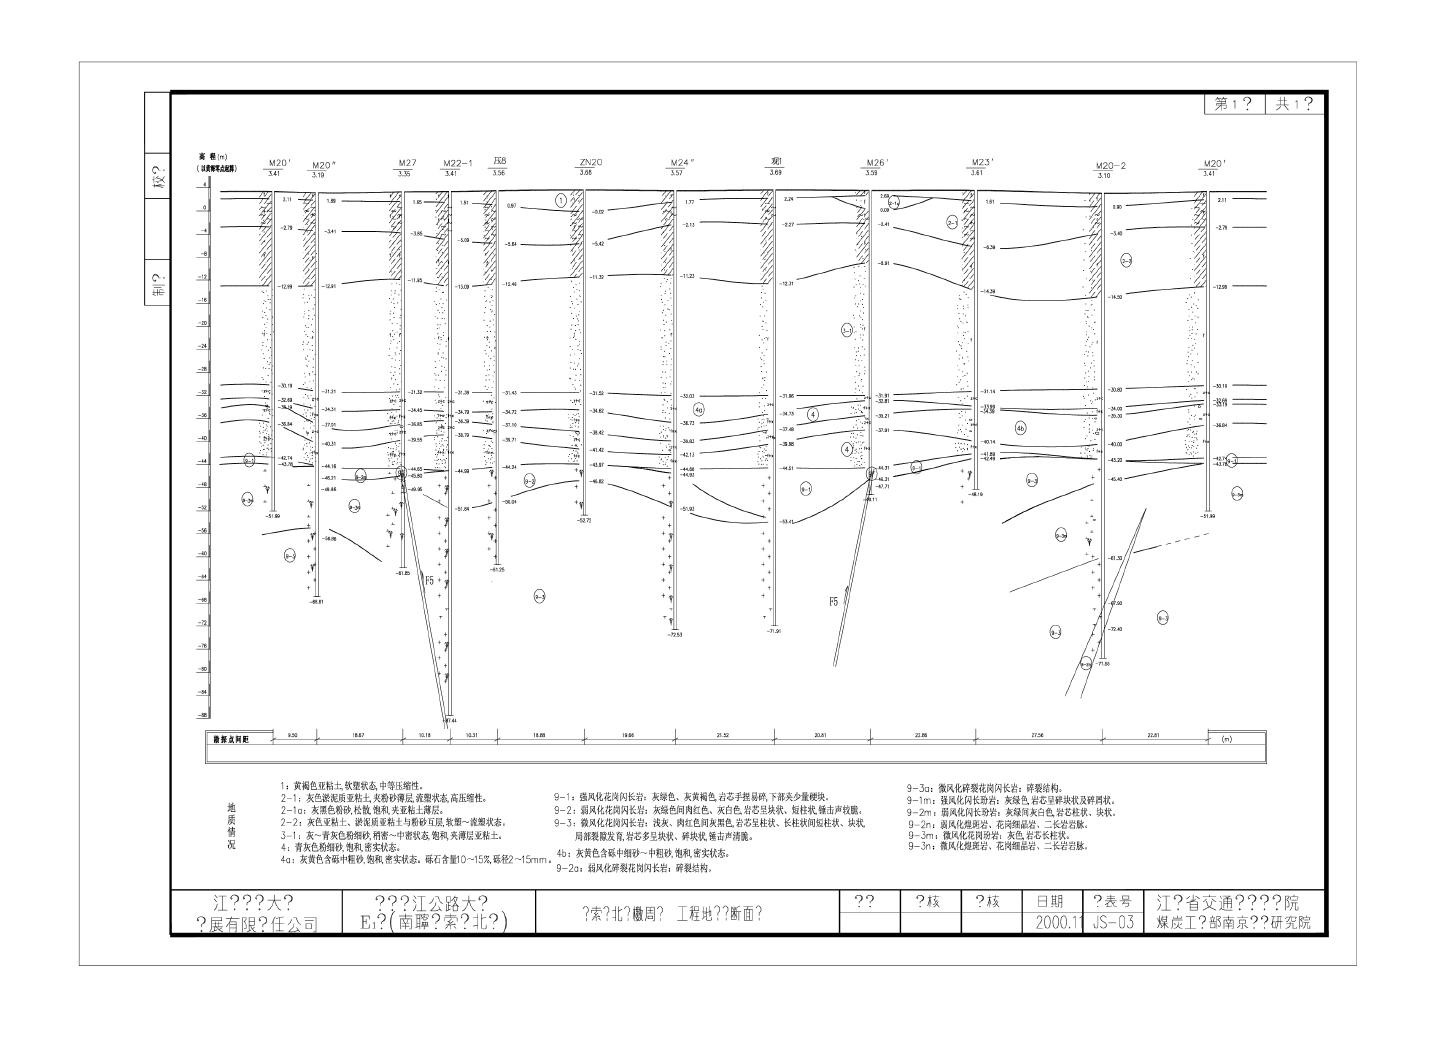 悬索桥北锚櫢周边工程地质纵断面图